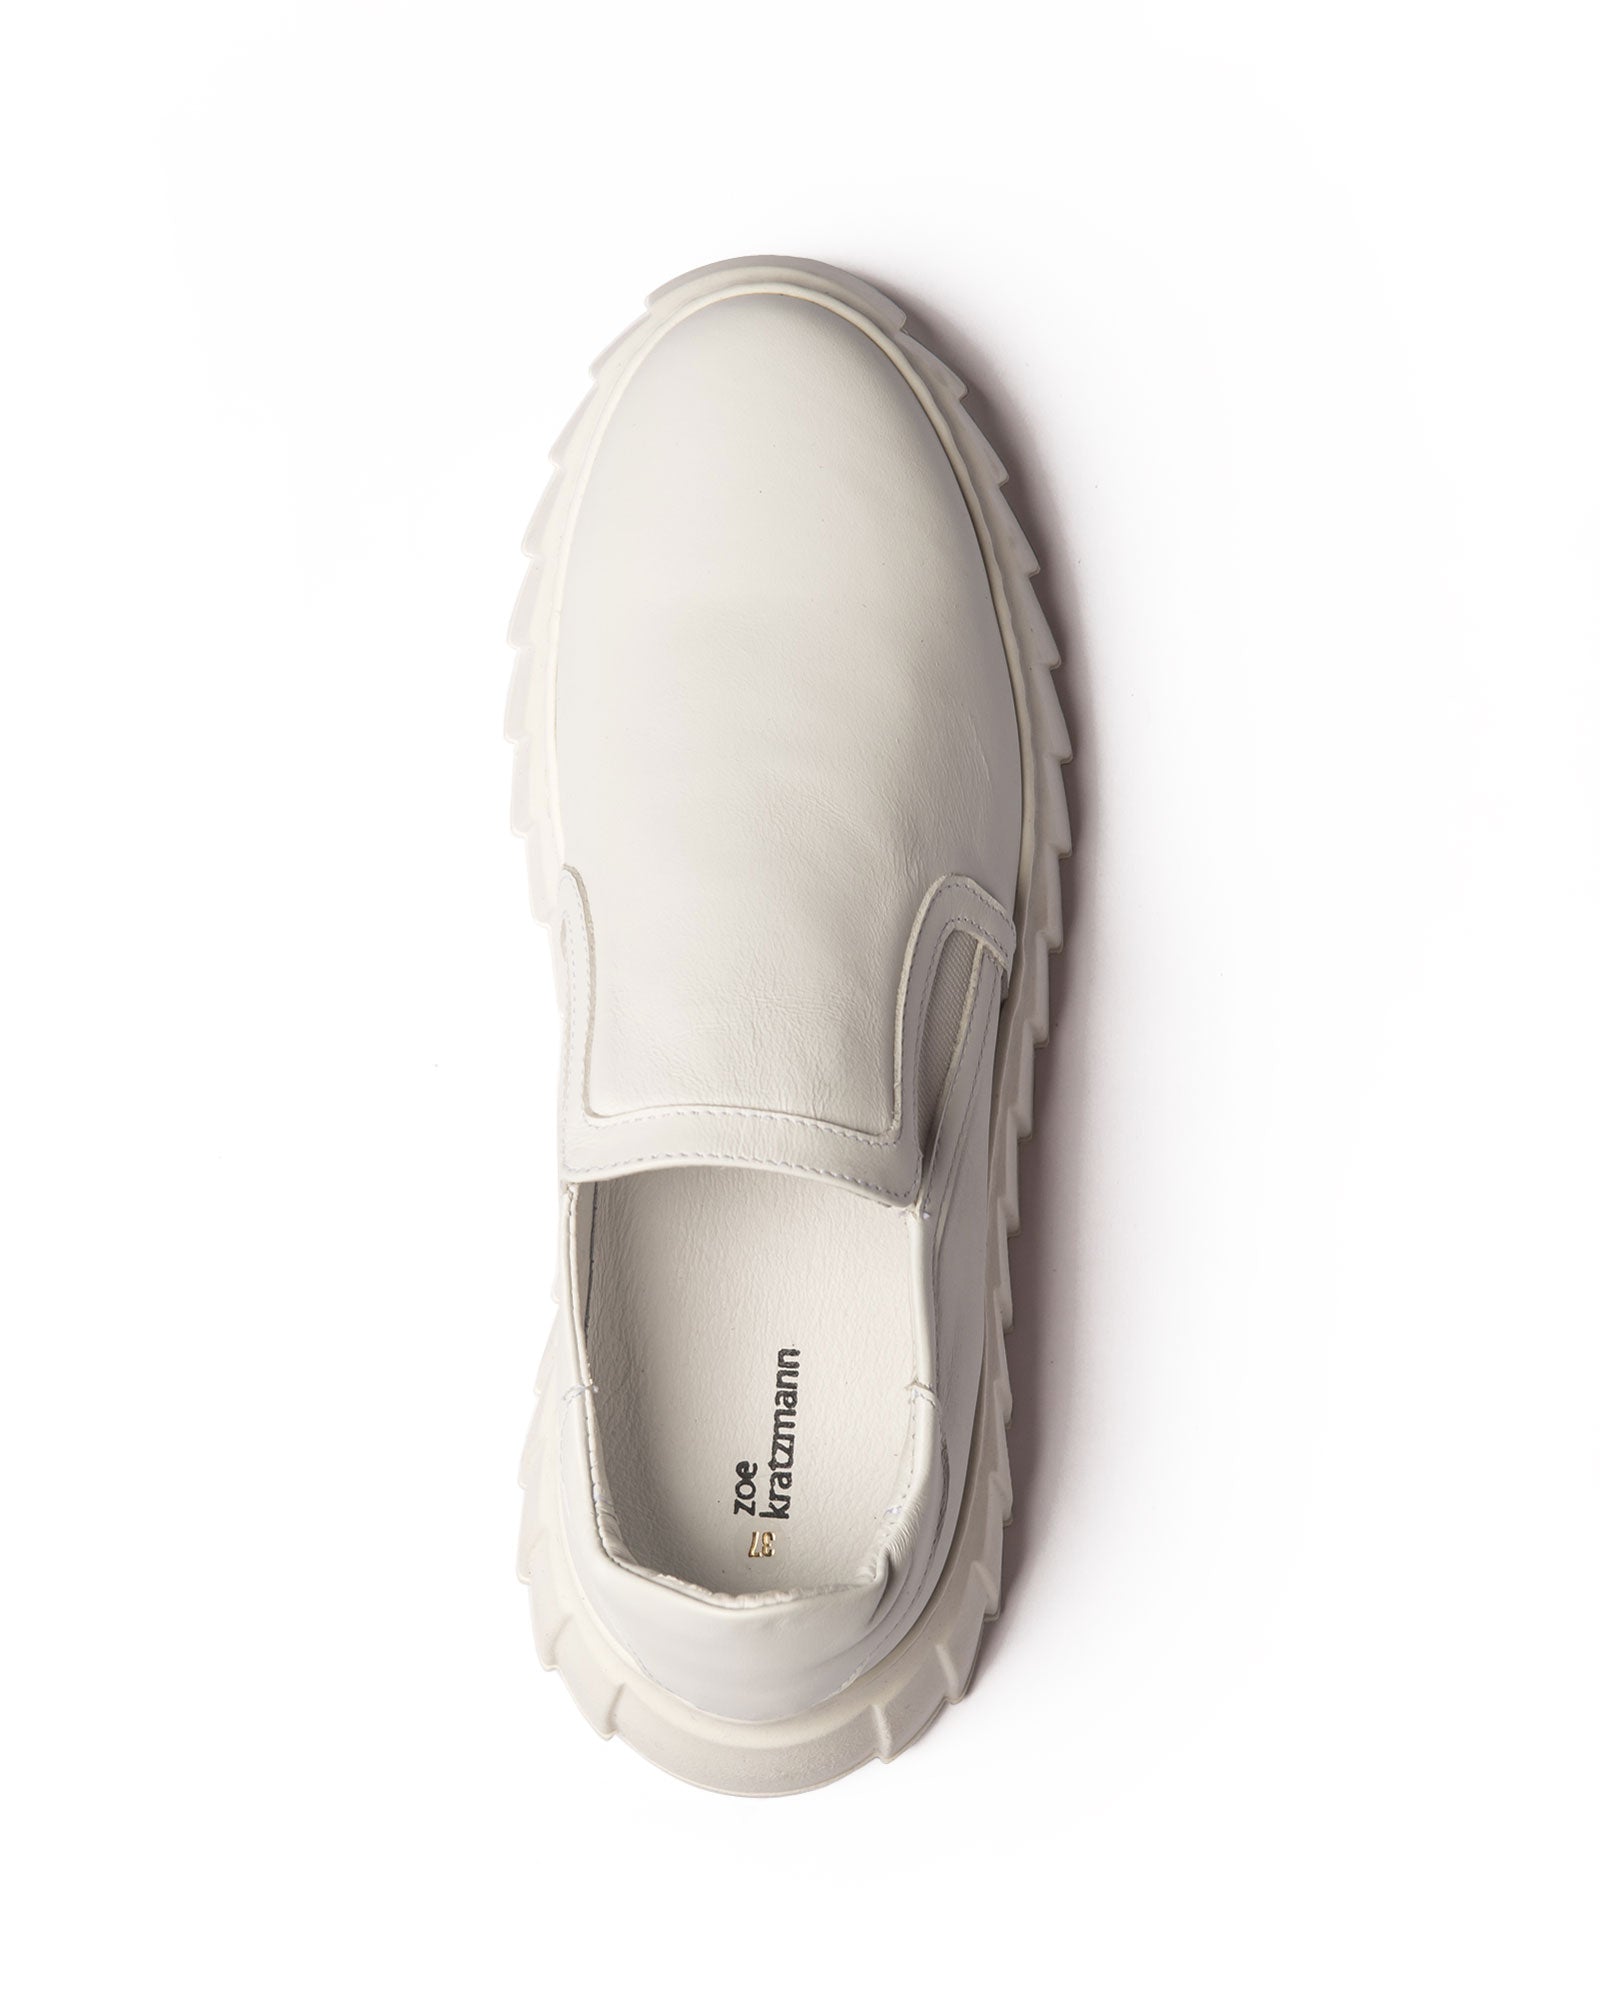 overland sneaker - white